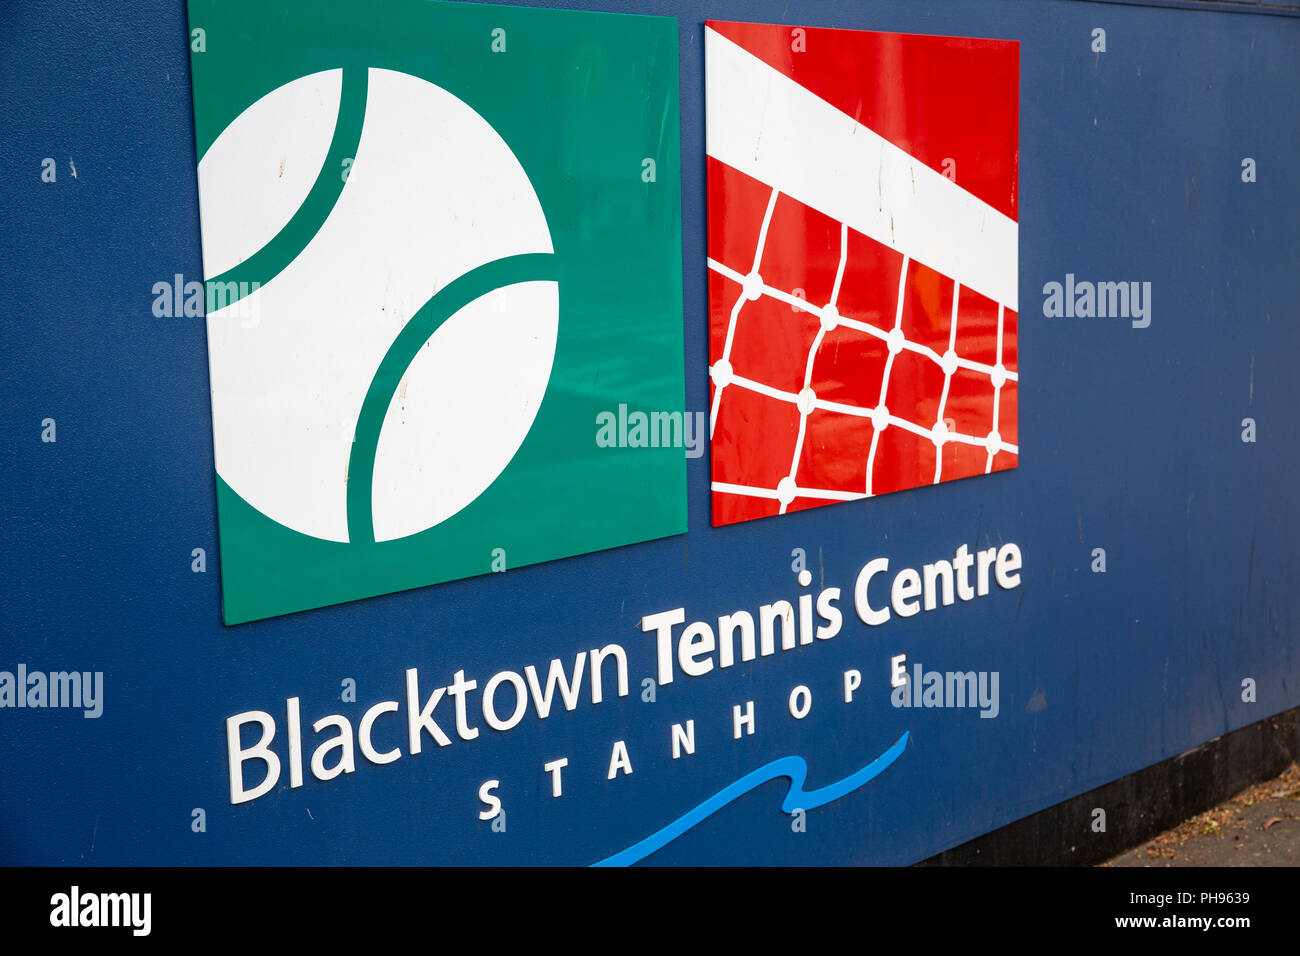 Blacktown tennis centre in Stanhope,Sydney,Australia Stock Photo